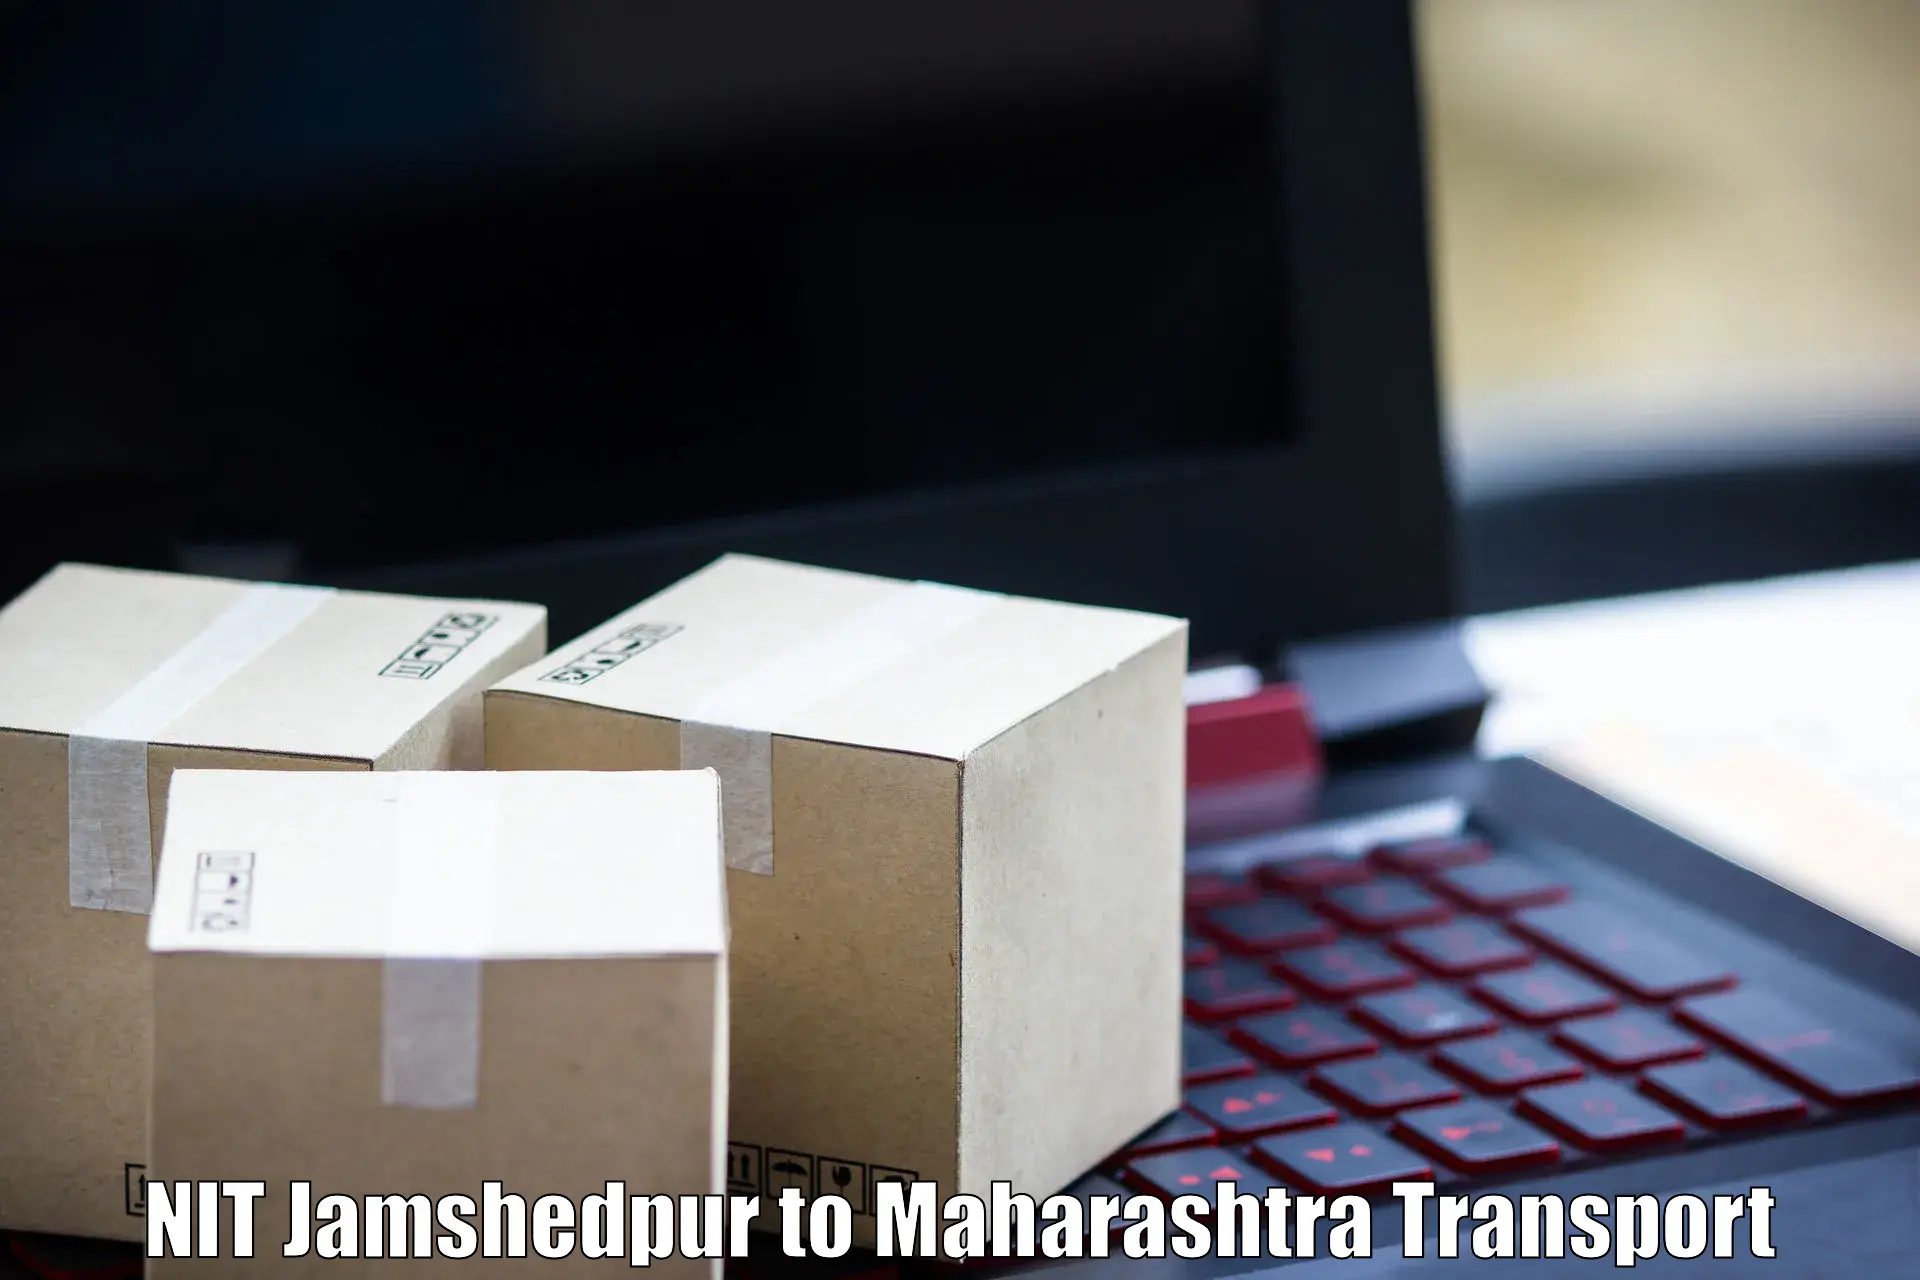 Shipping partner NIT Jamshedpur to Maharashtra